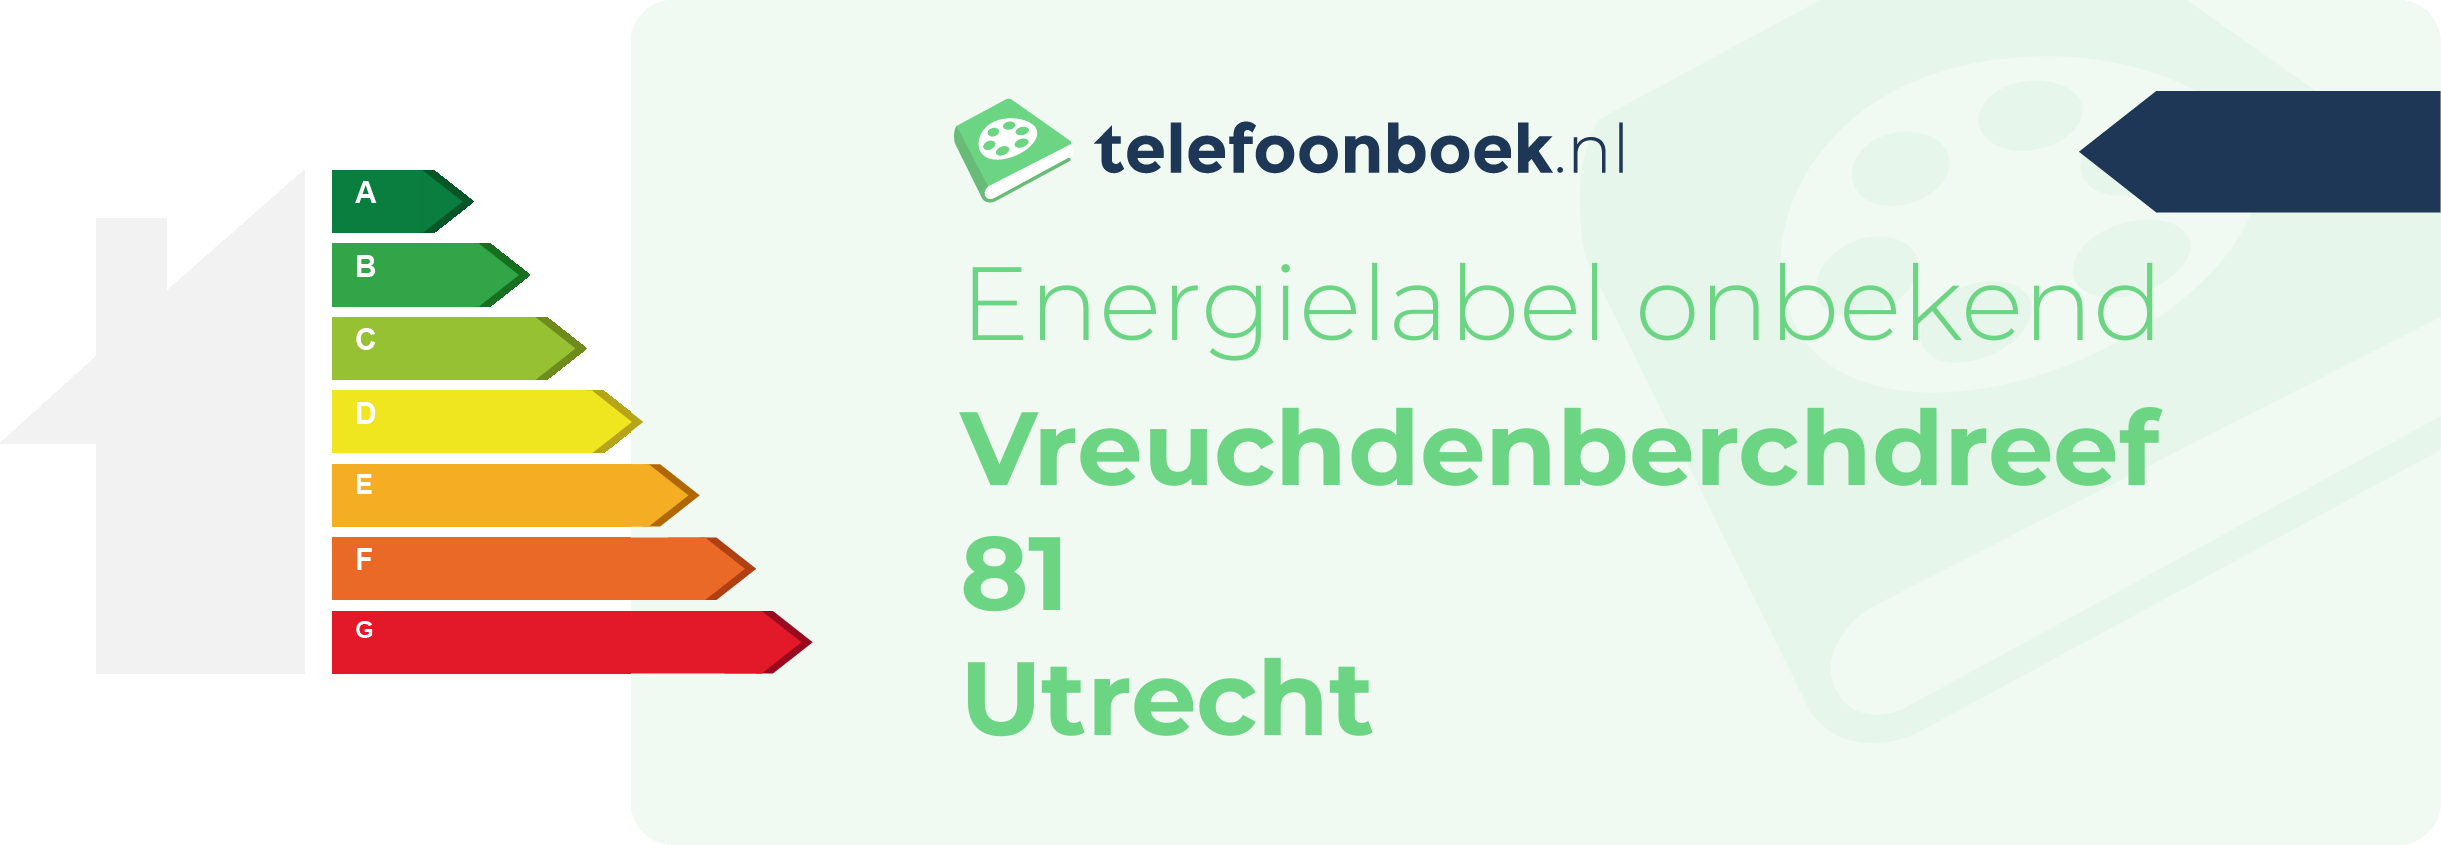 Energielabel Vreuchdenberchdreef 81 Utrecht